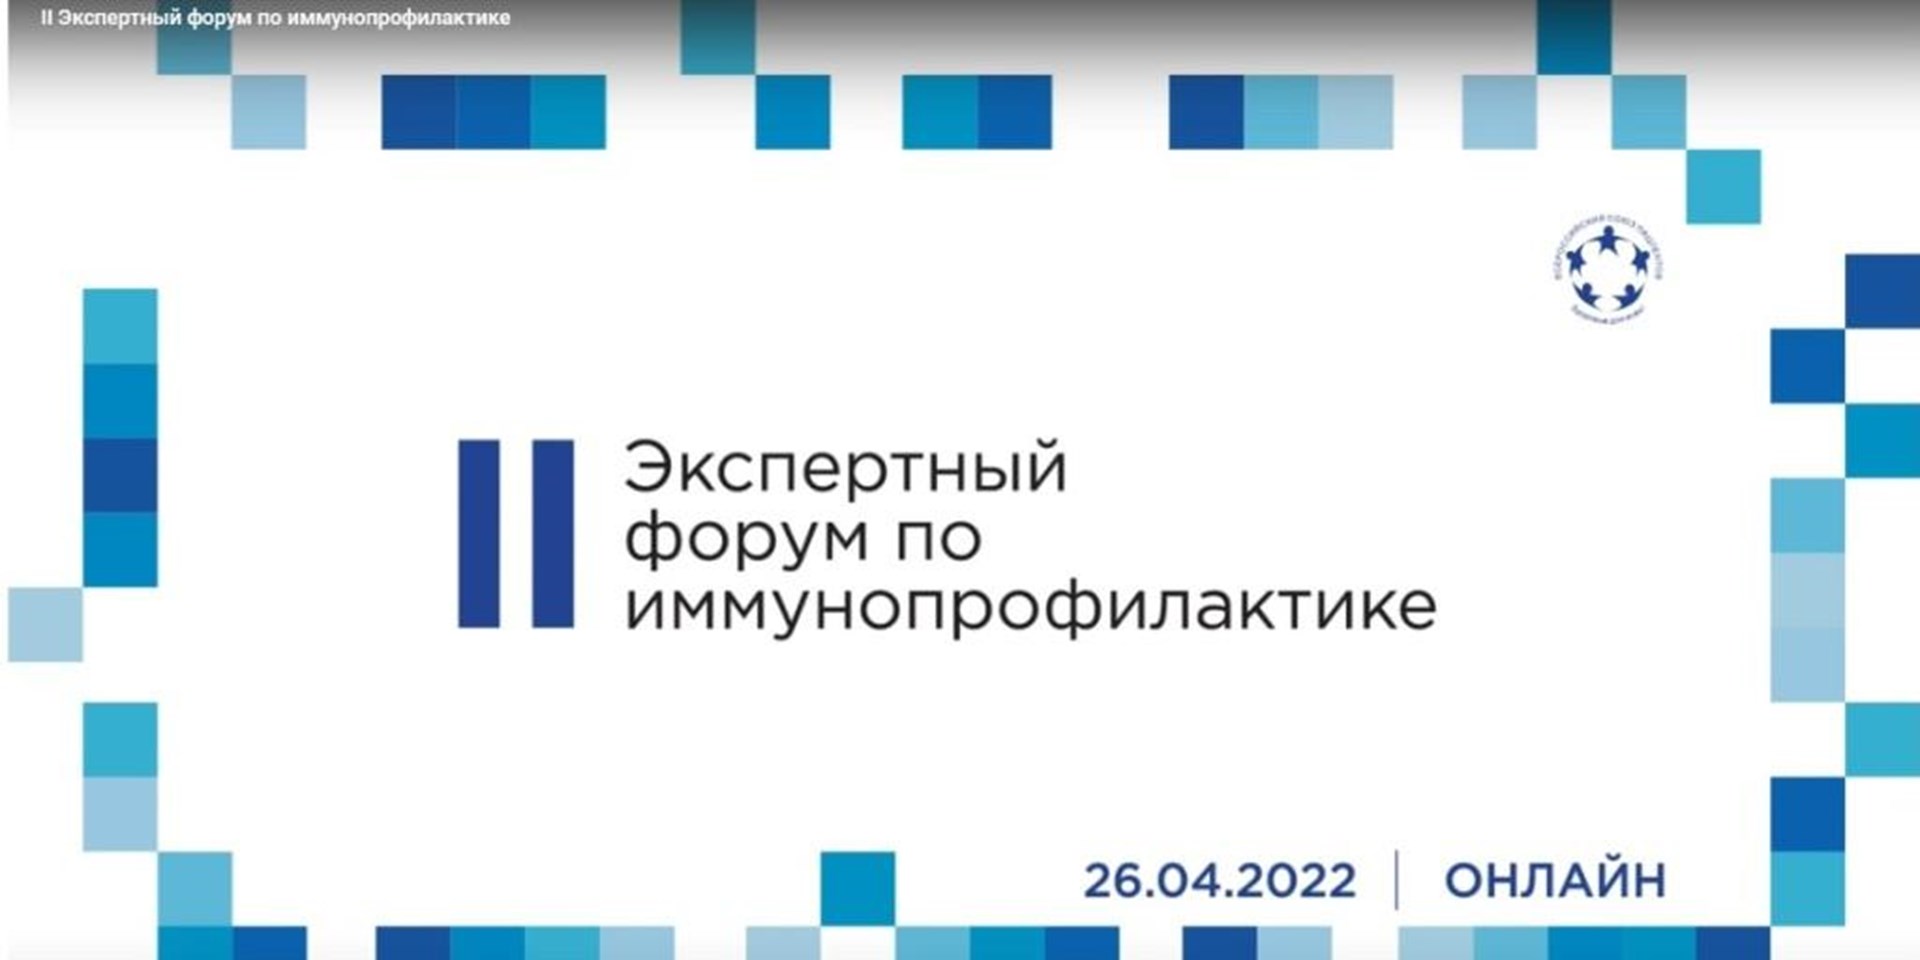 26.04.2022 ВСП провел обсуждение резолюции по развитию отечественной иммунопрофилактики